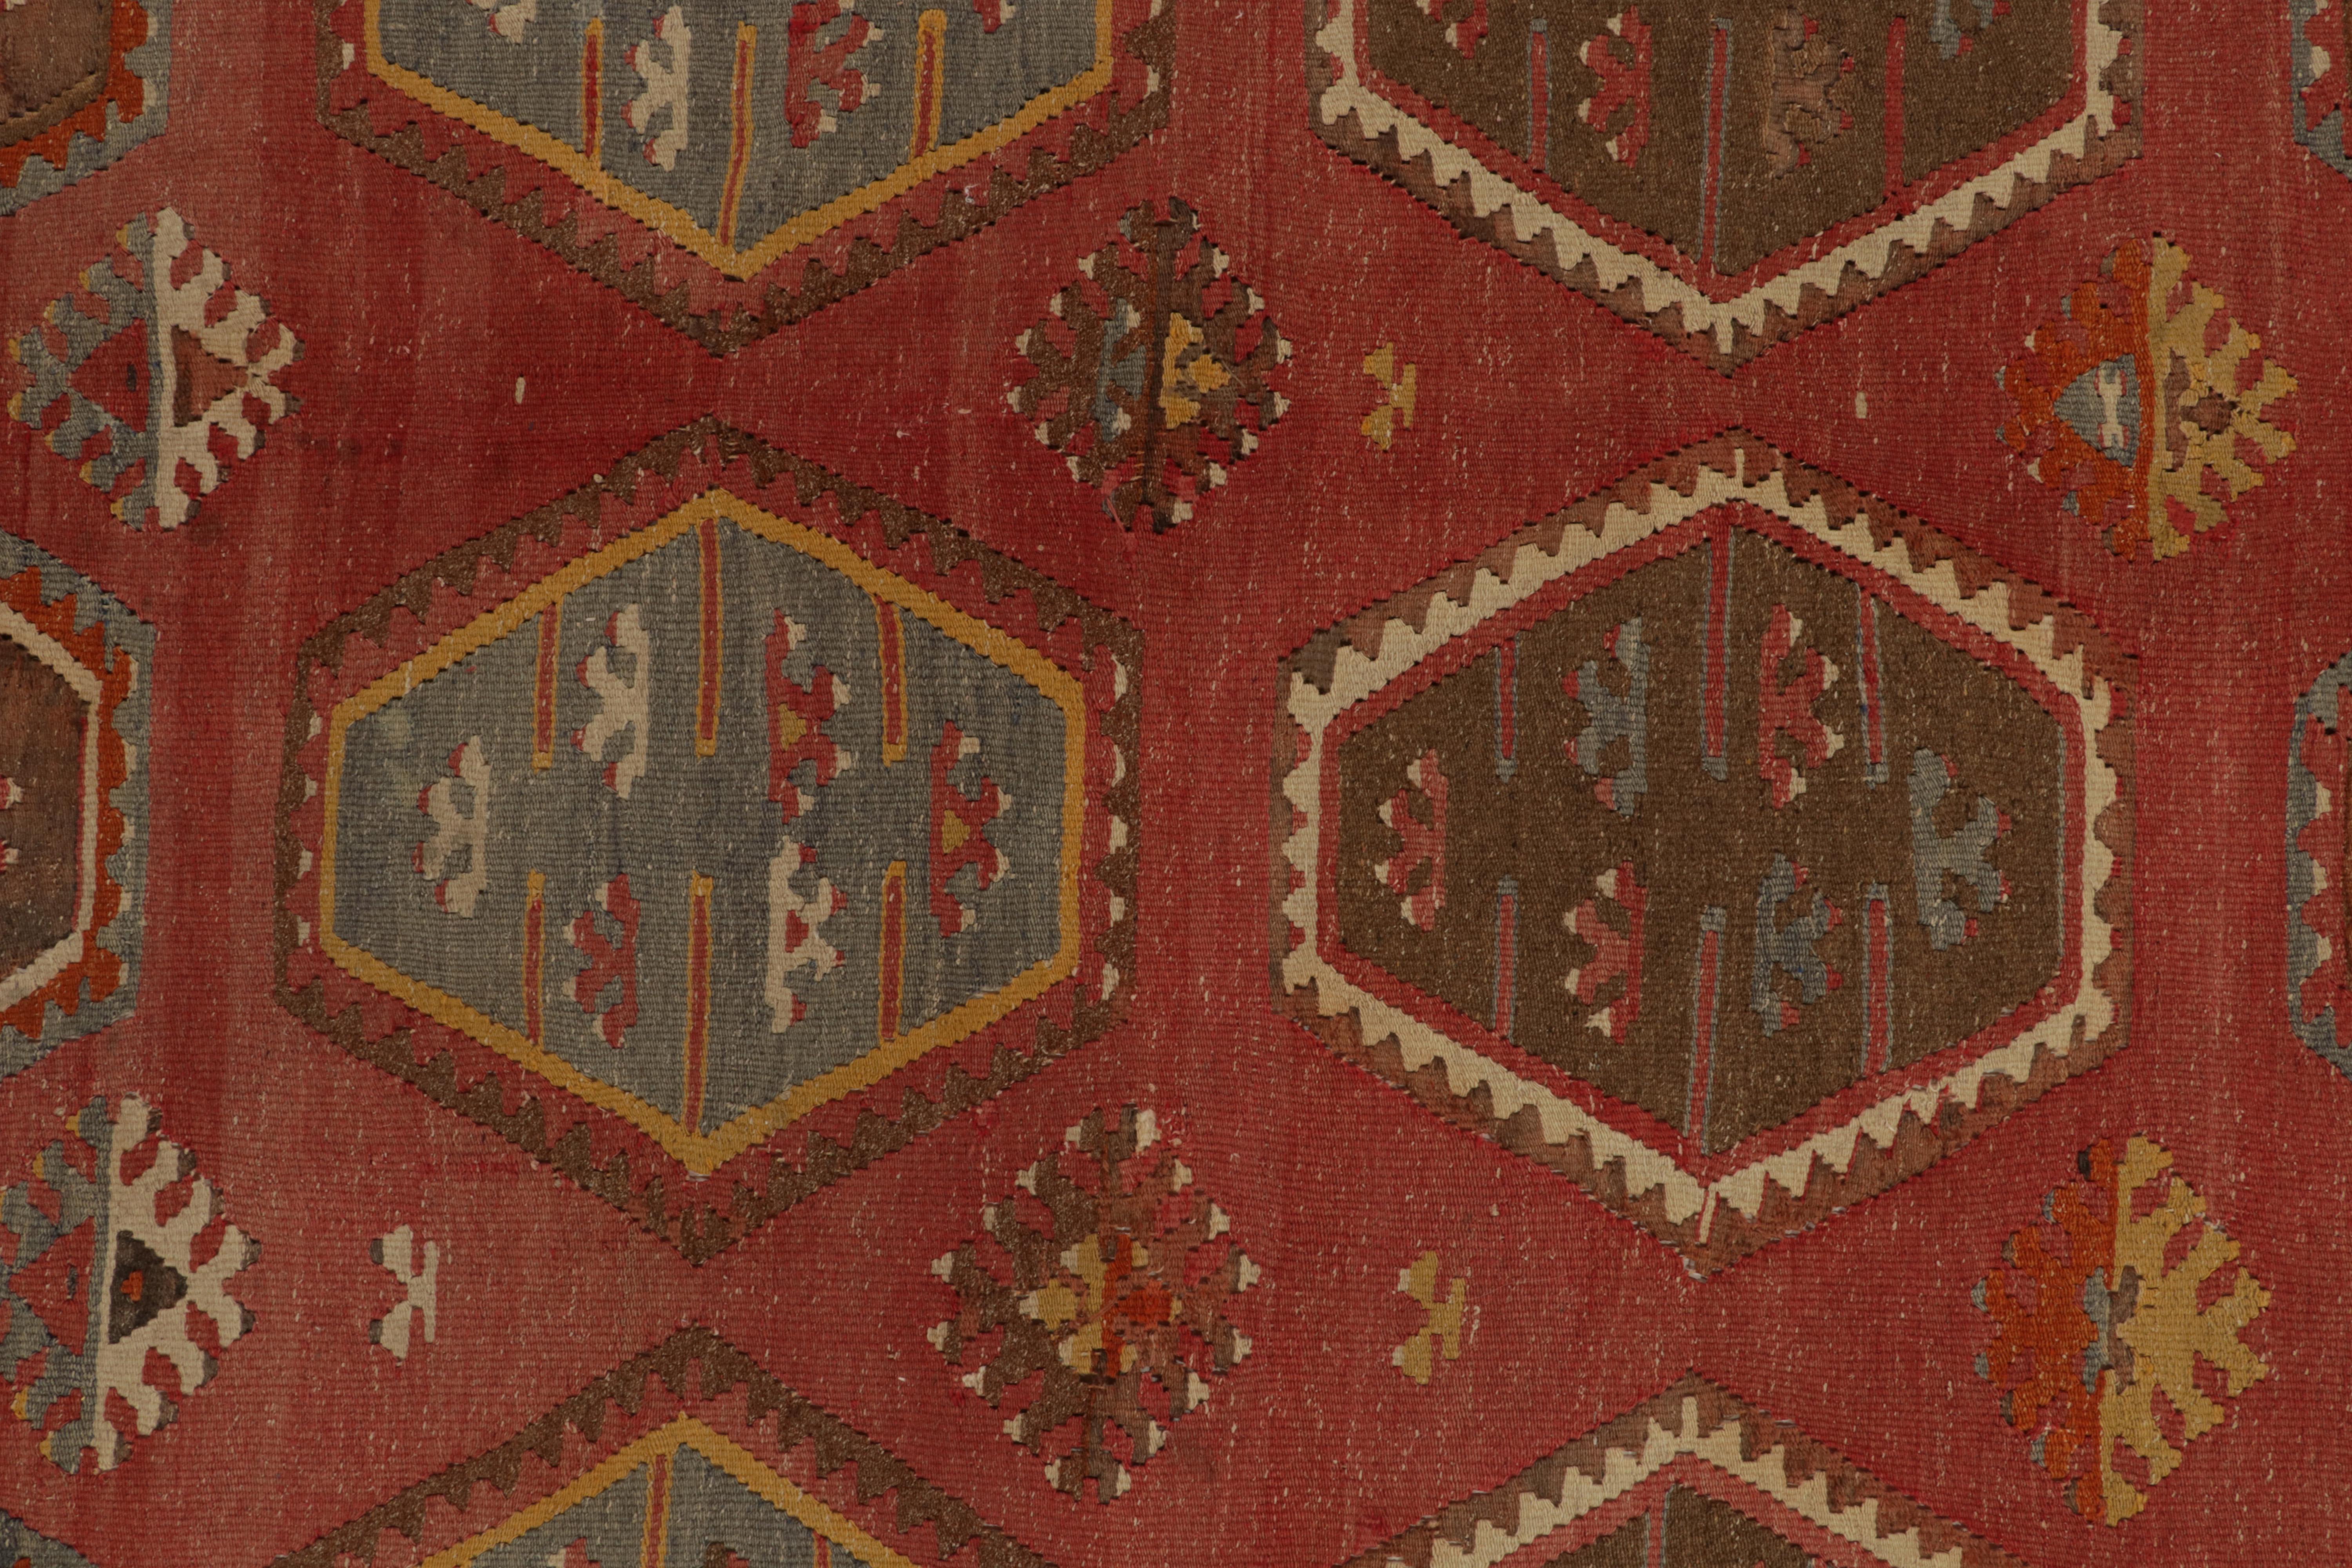 Wool Vintage Turkish Kilim rug in Red & Brown Tribal Geometric Pattern by Rug & Kilim For Sale